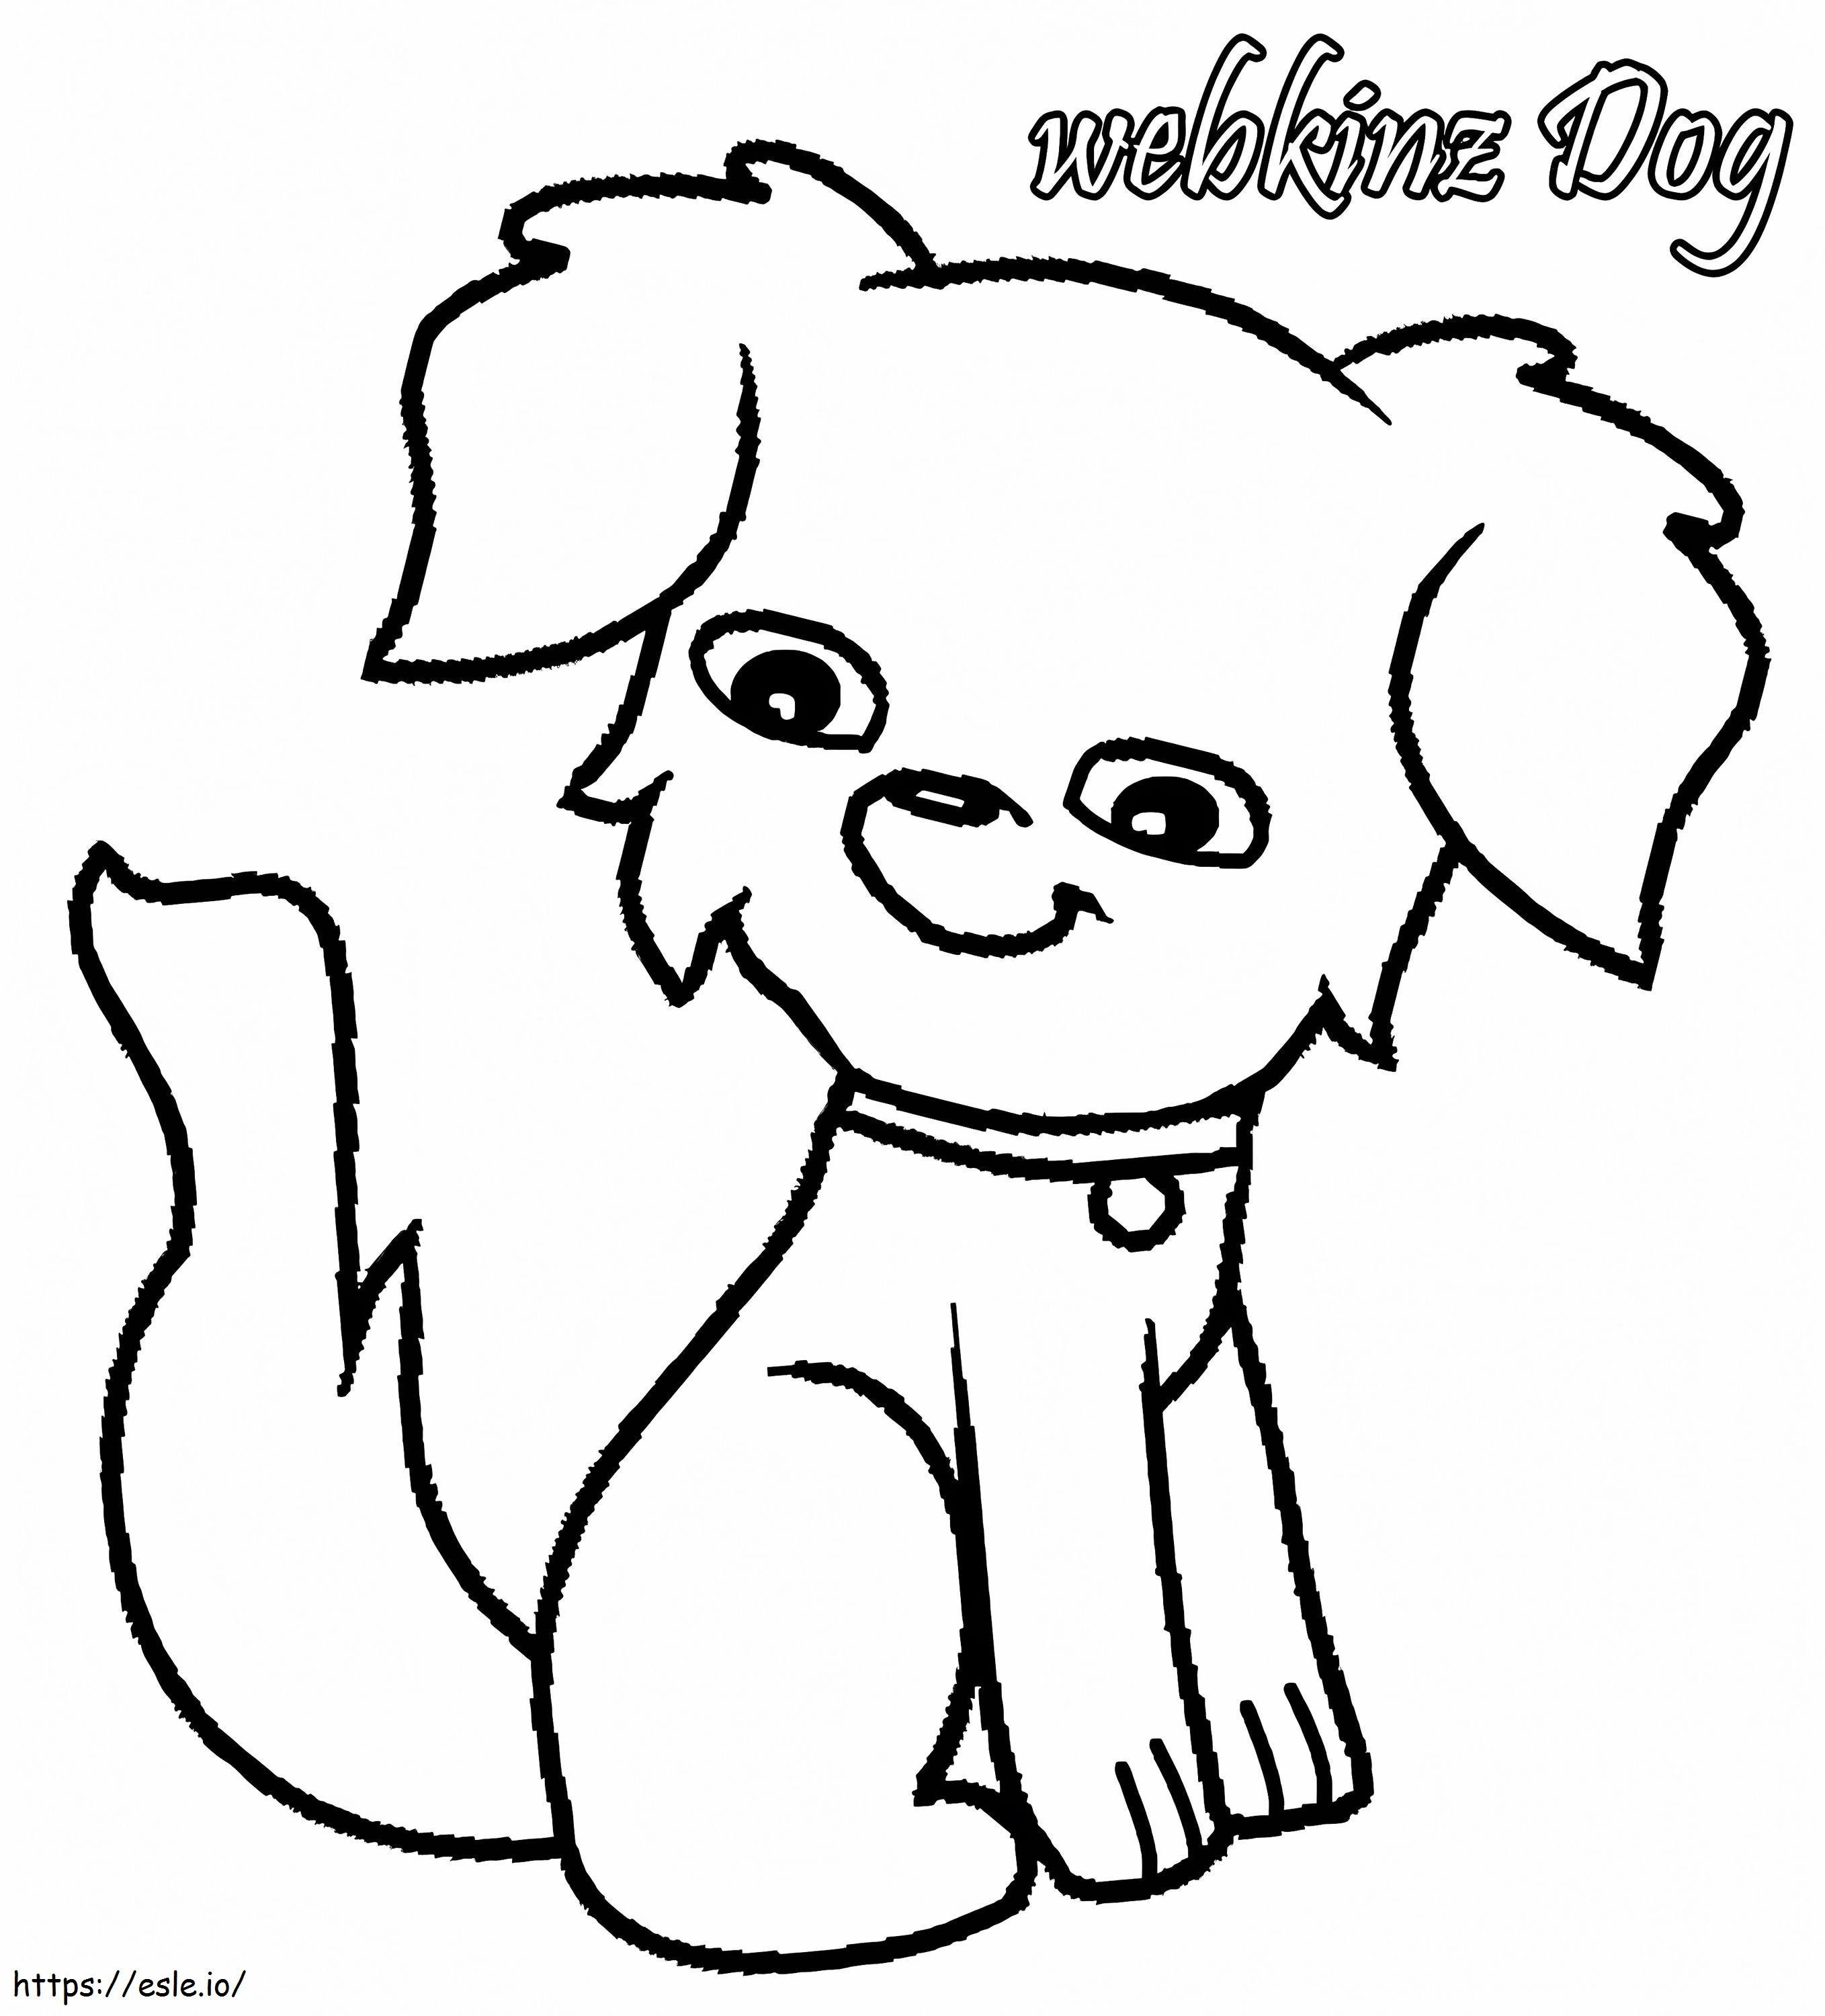 Simpatico cane Webkinz da colorare